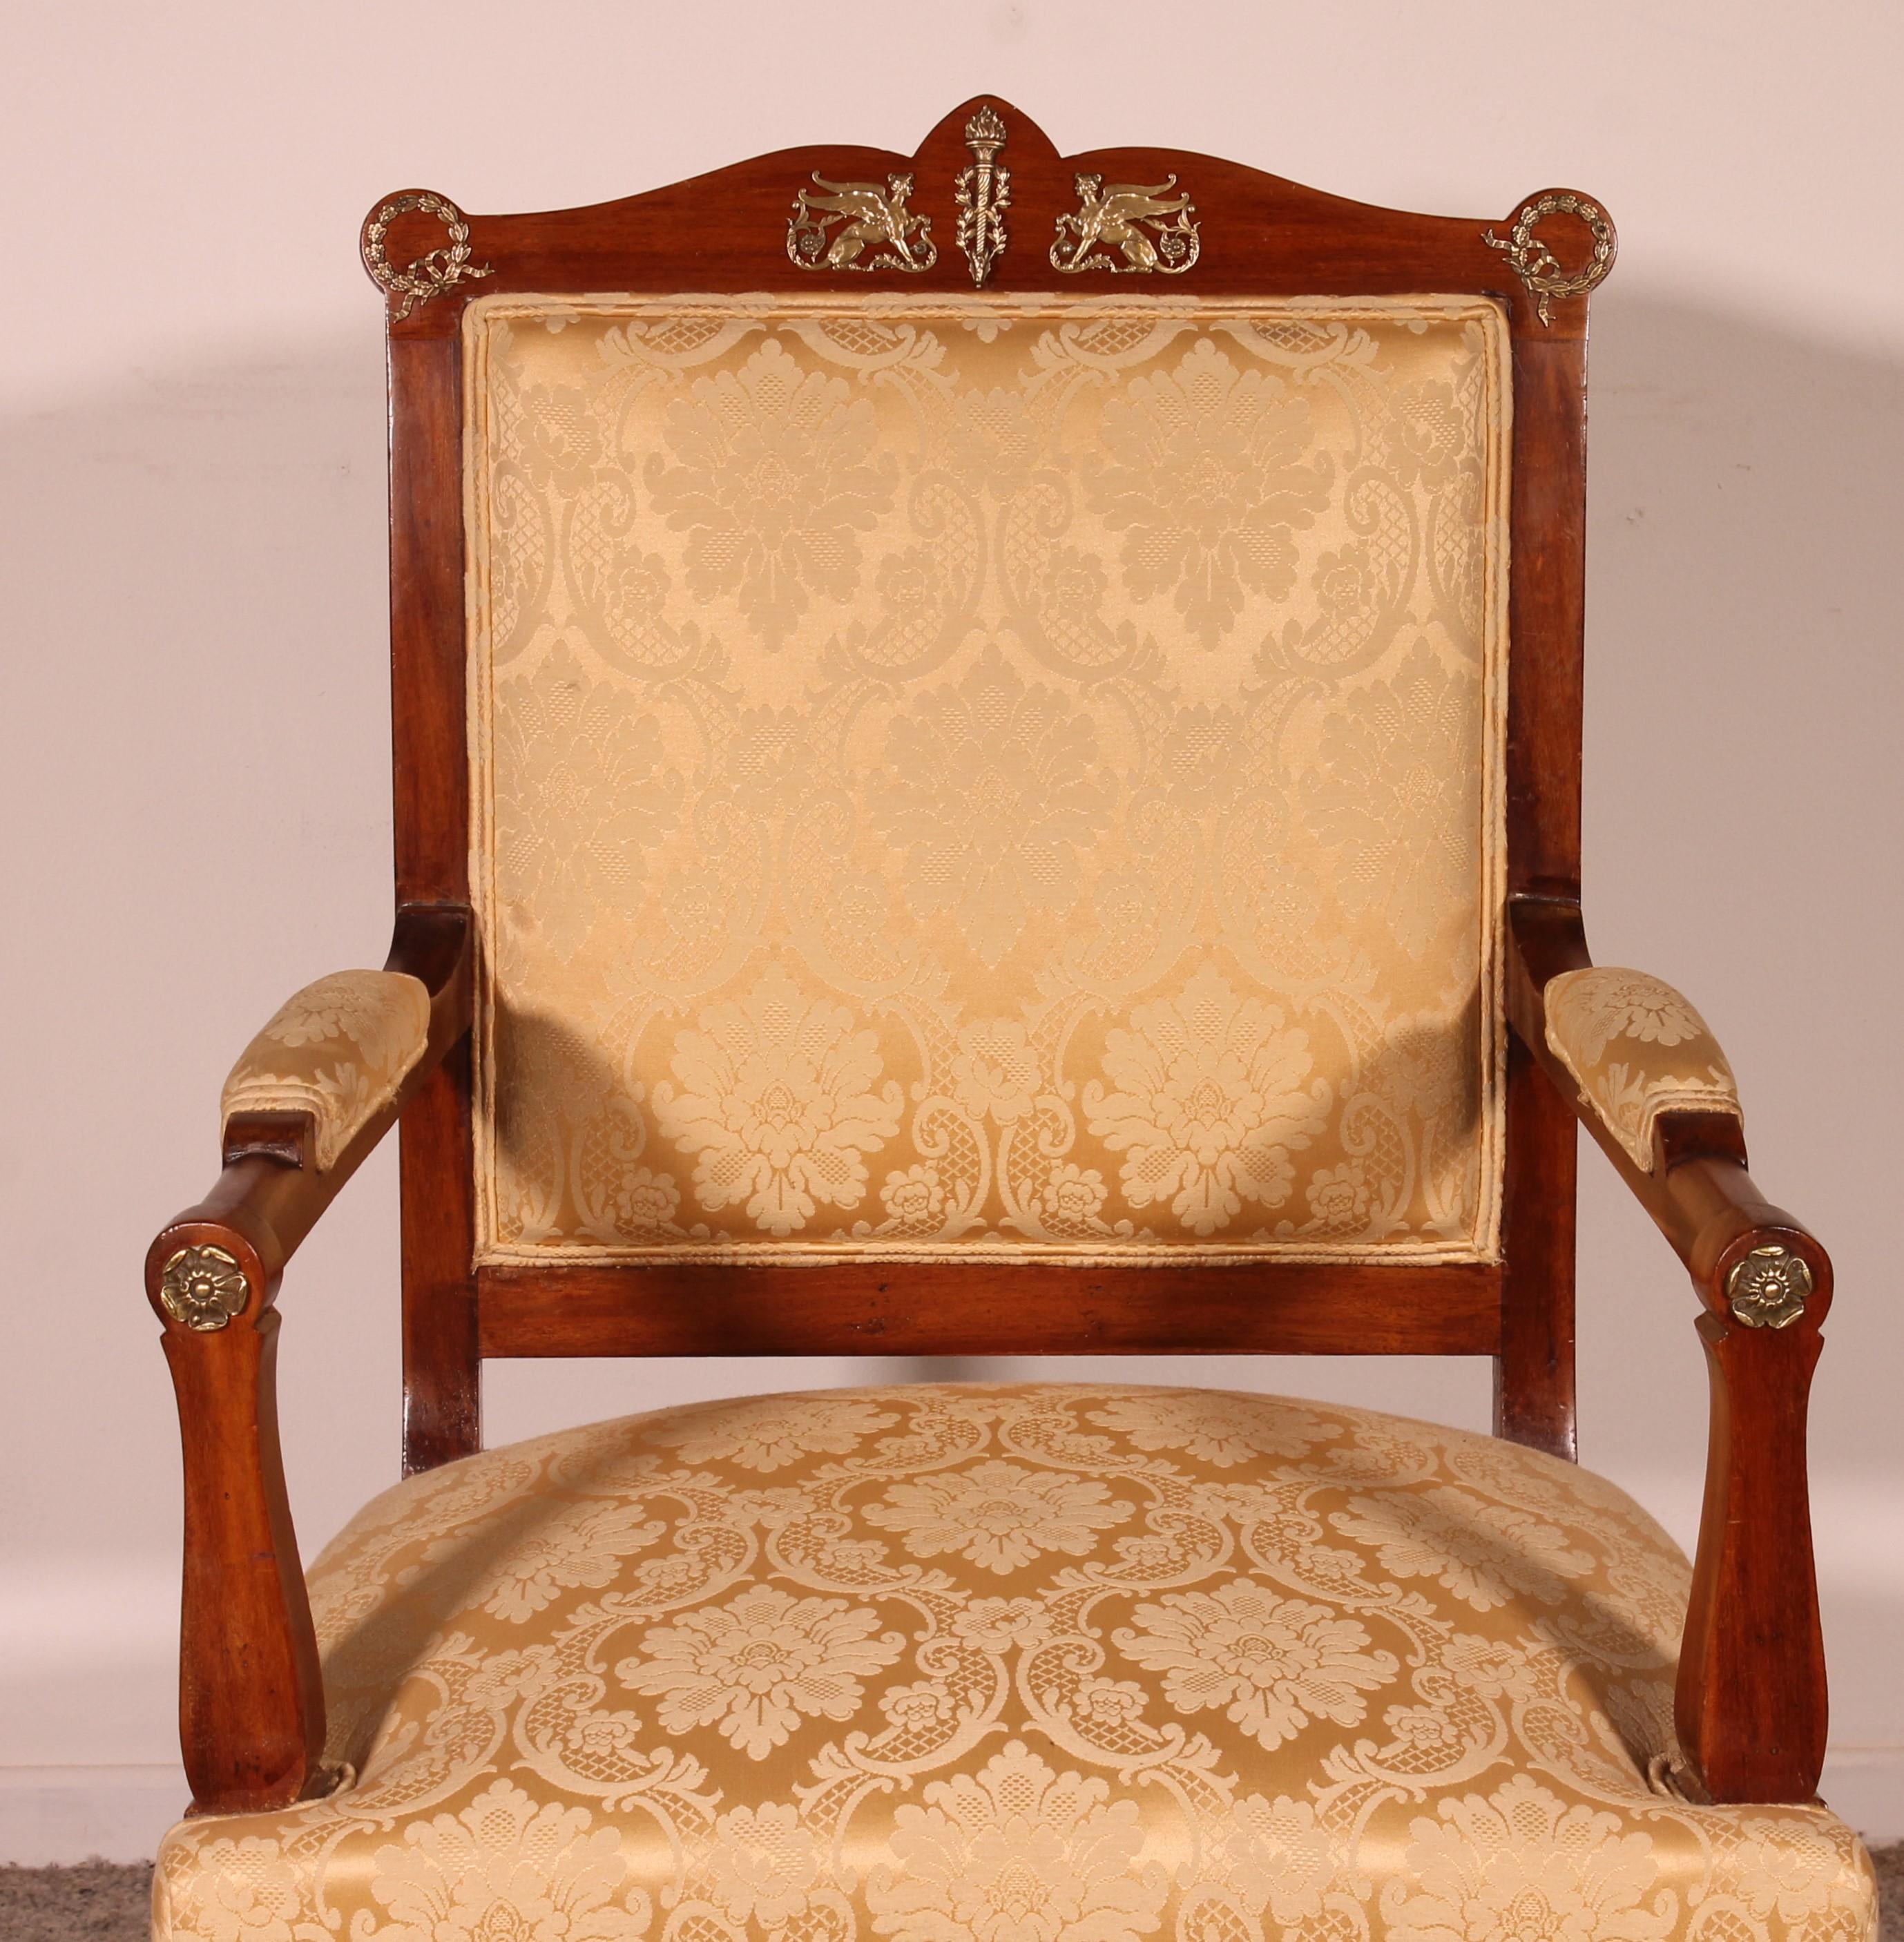 Joli fauteuil en acajou de style empire de la fin du 19ème siècle
Bronze de très bonne qualité et bel acajou
Très beau fauteuil qui peut être utilisé comme chaise de bibliothèque ou fauteuil de bureau.
hauteur du siège 44cm
En superbe état.